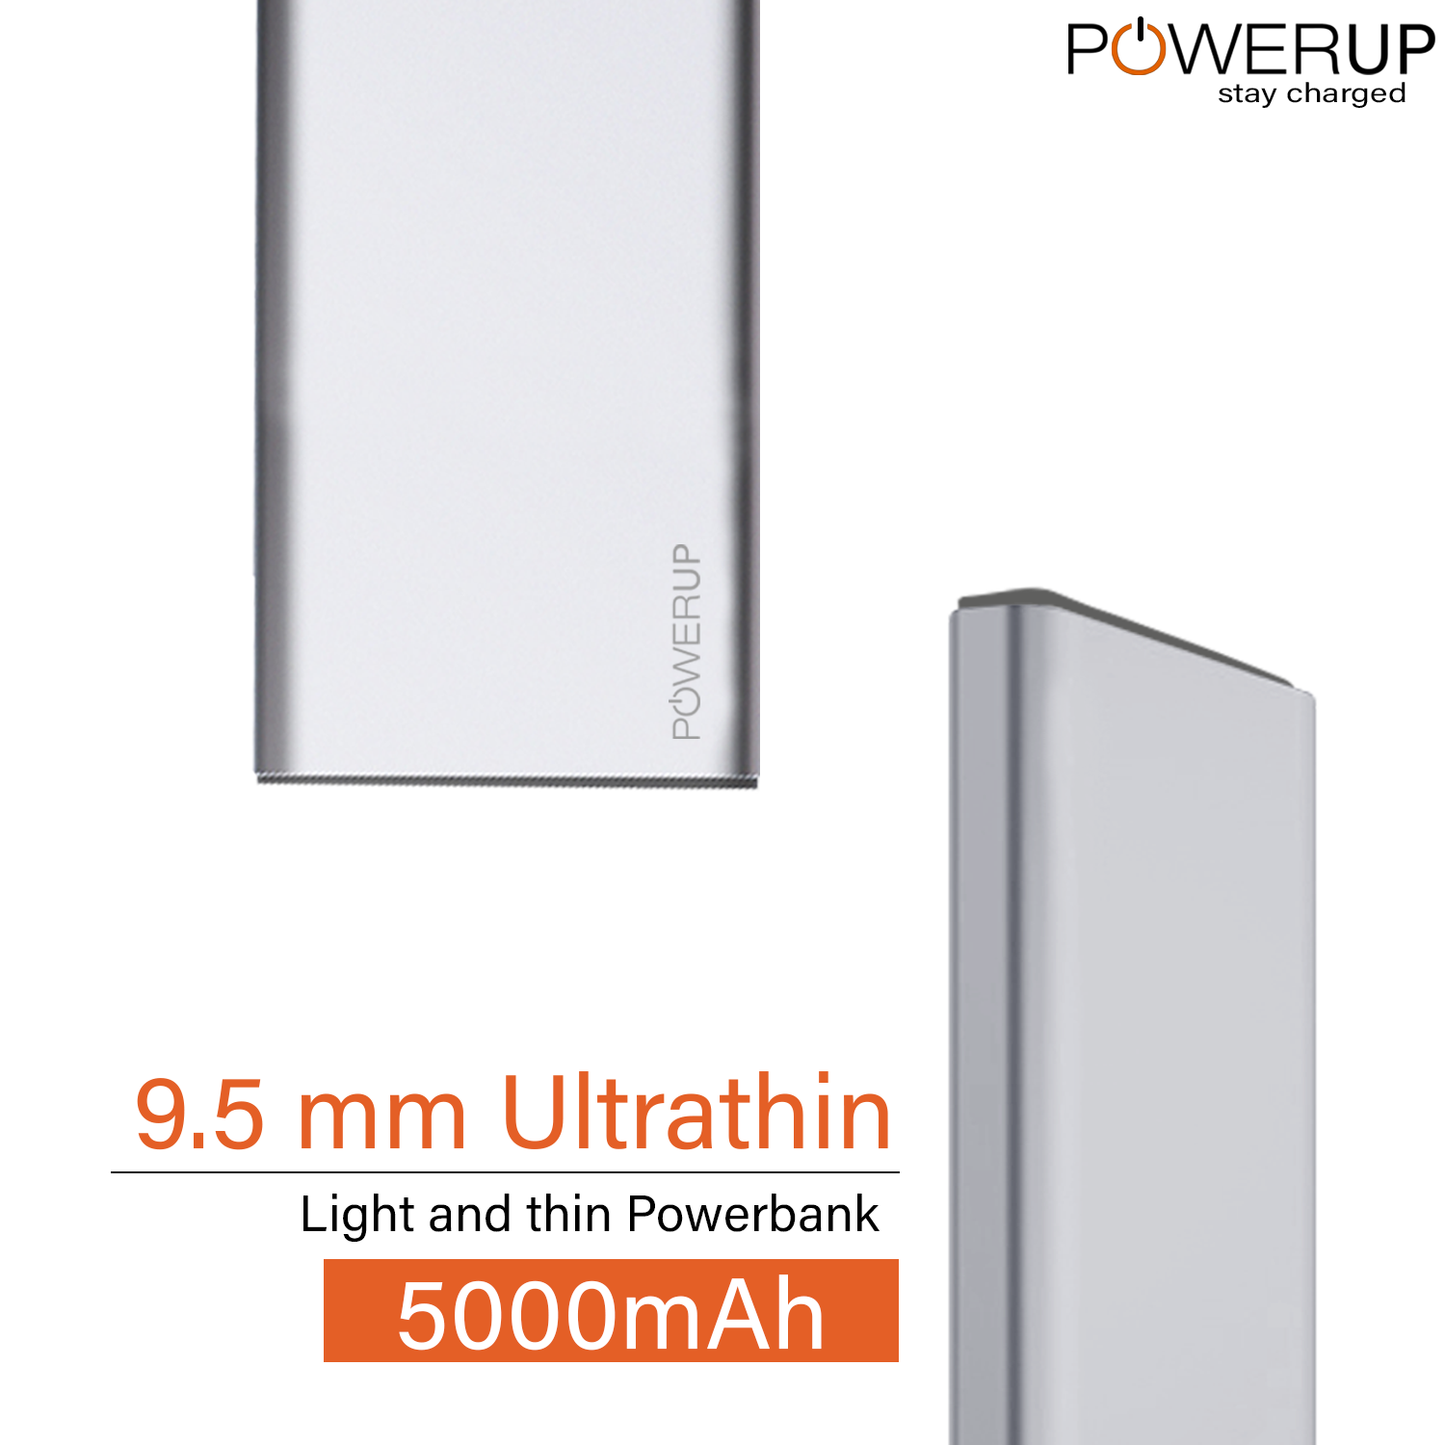 Powerup Alupac 5000mah Aluminium Power Bank 1usb - Gunmetal